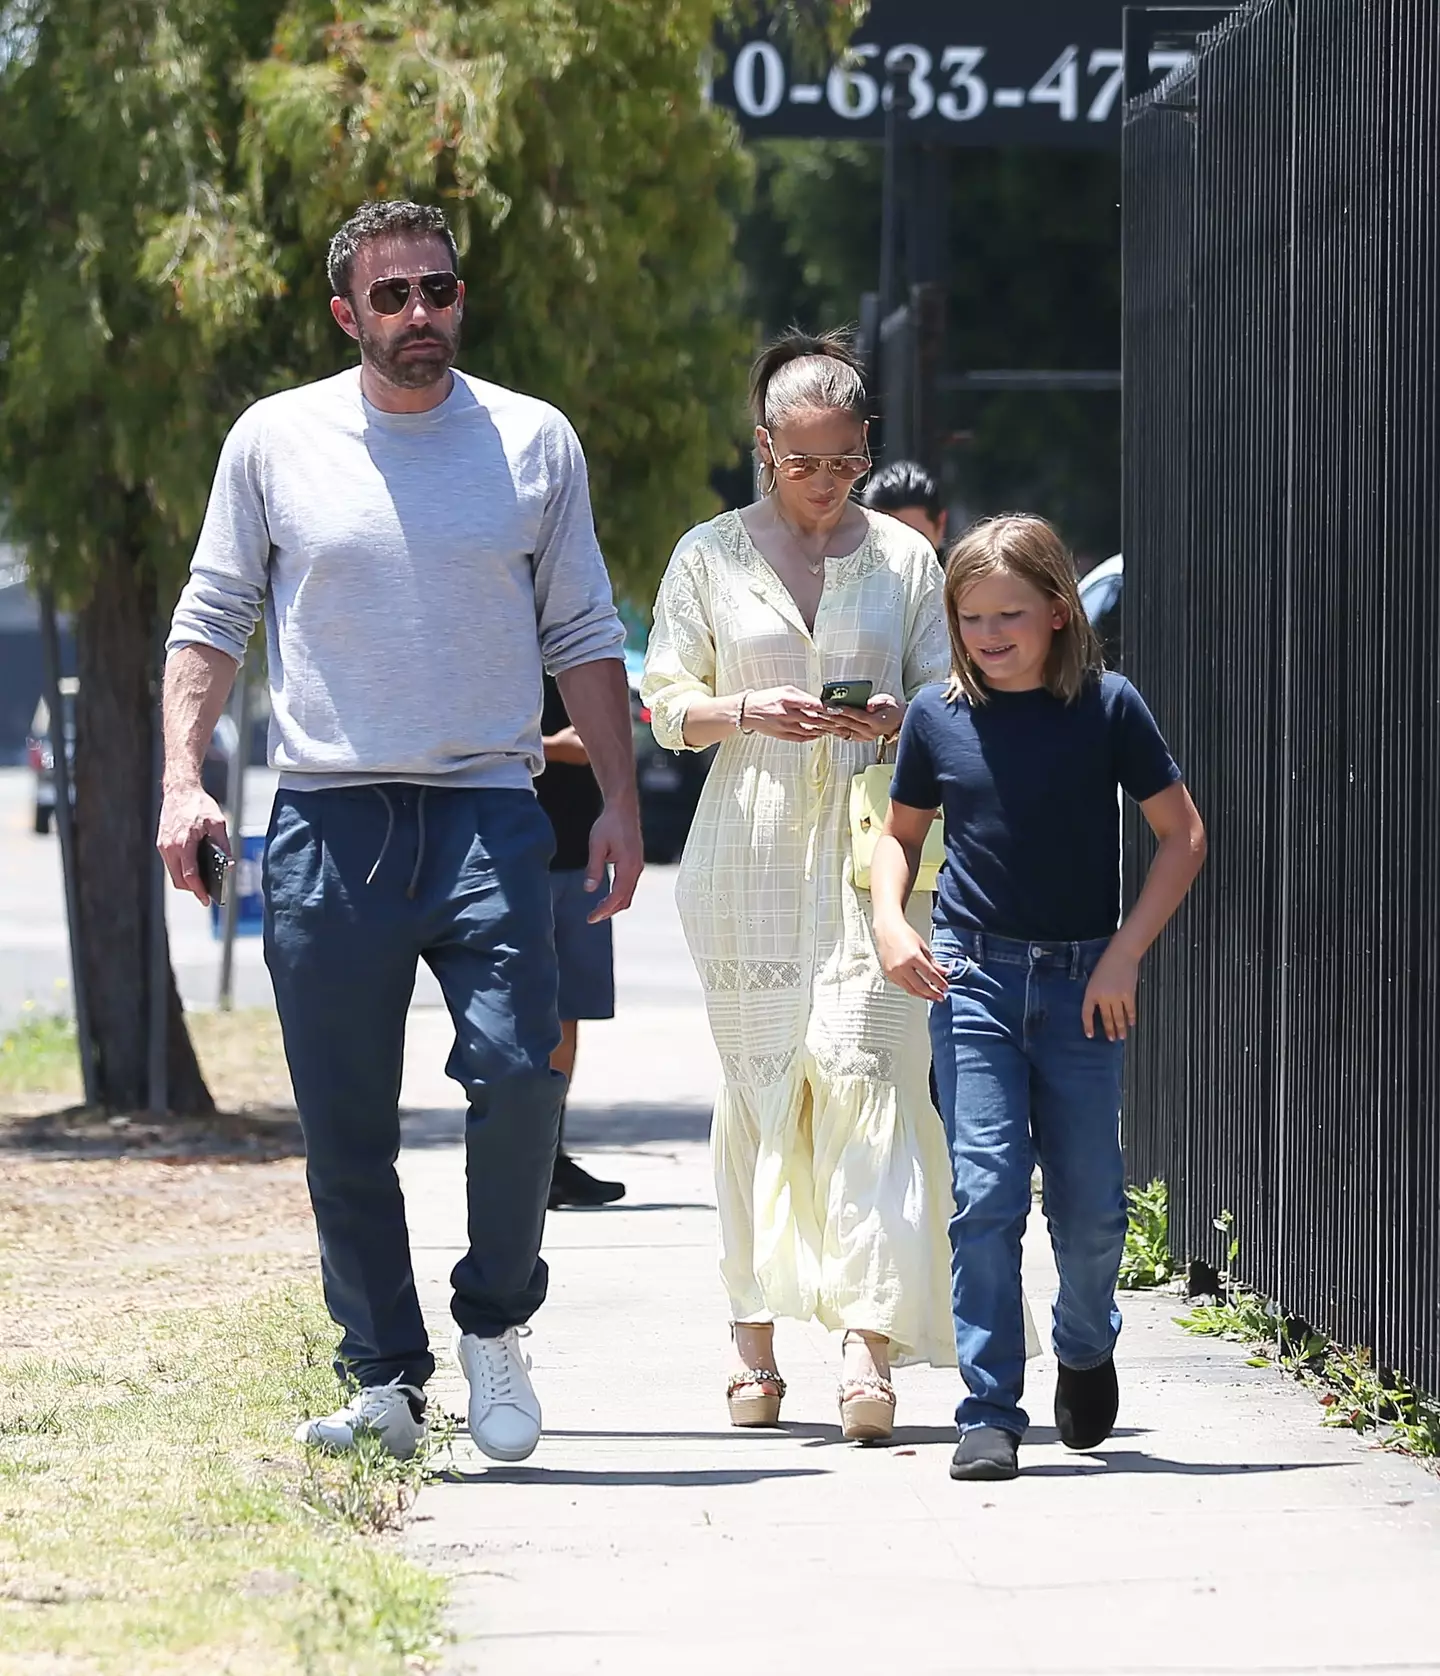 Ben Affleck, son Samuel and Jennifer Lopez were all fine after the slight bump.